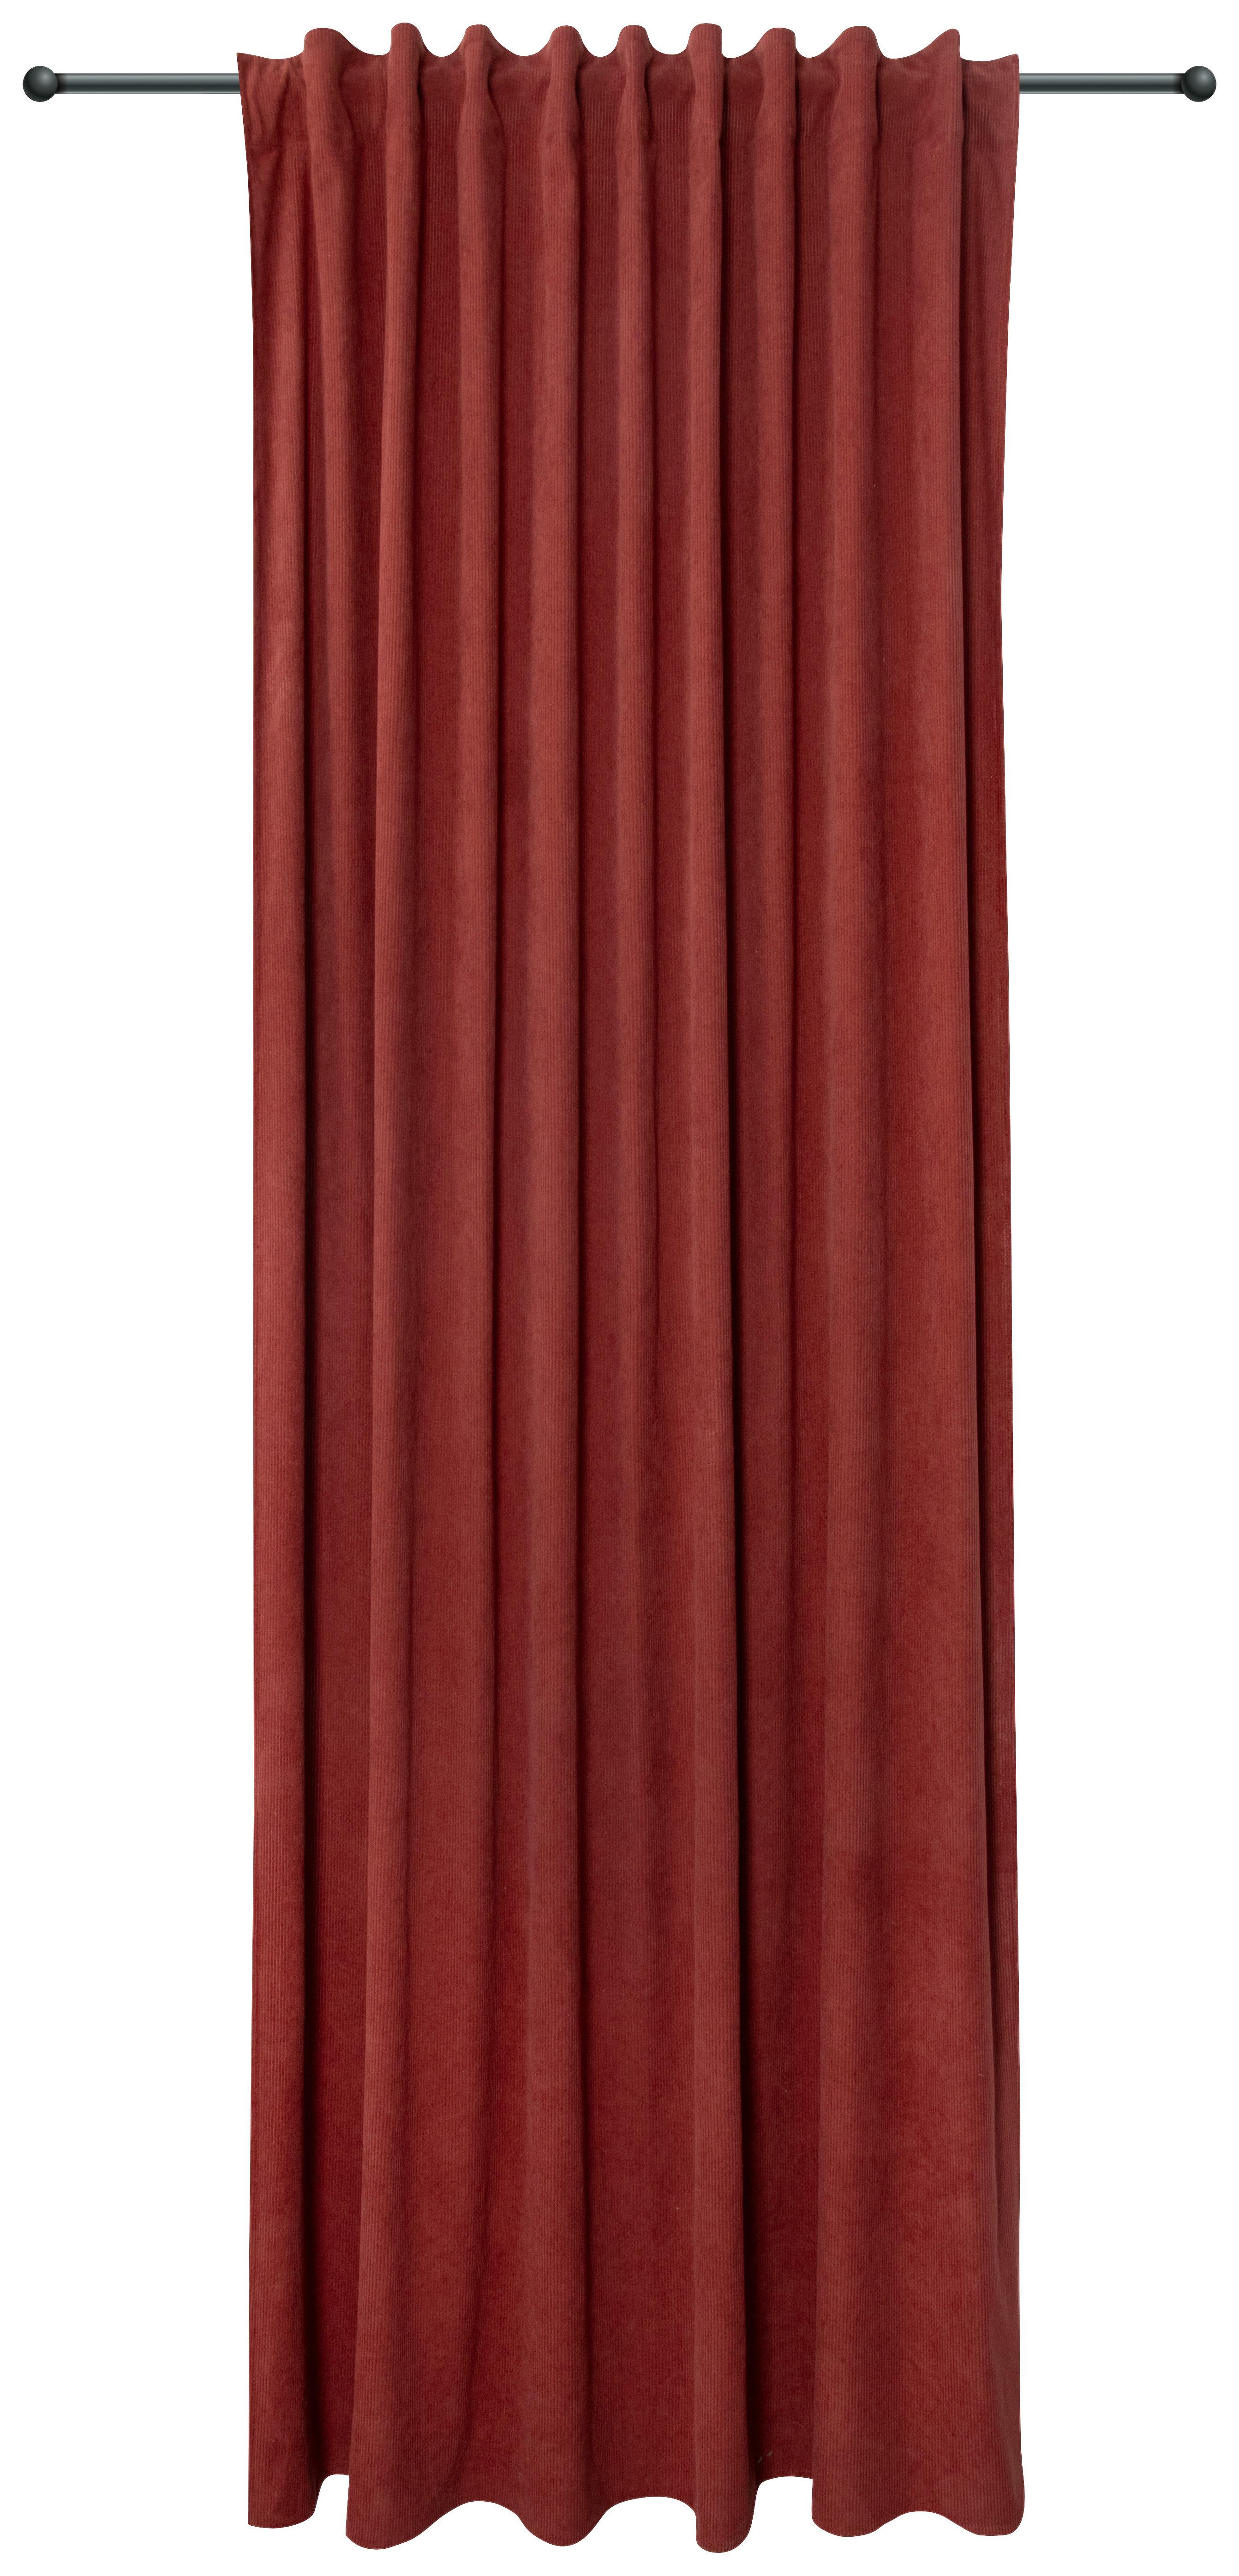 Készfüggöny Maren - Terrakotta, romantikus/Landhaus, Textil (140/245cm) - James Wood